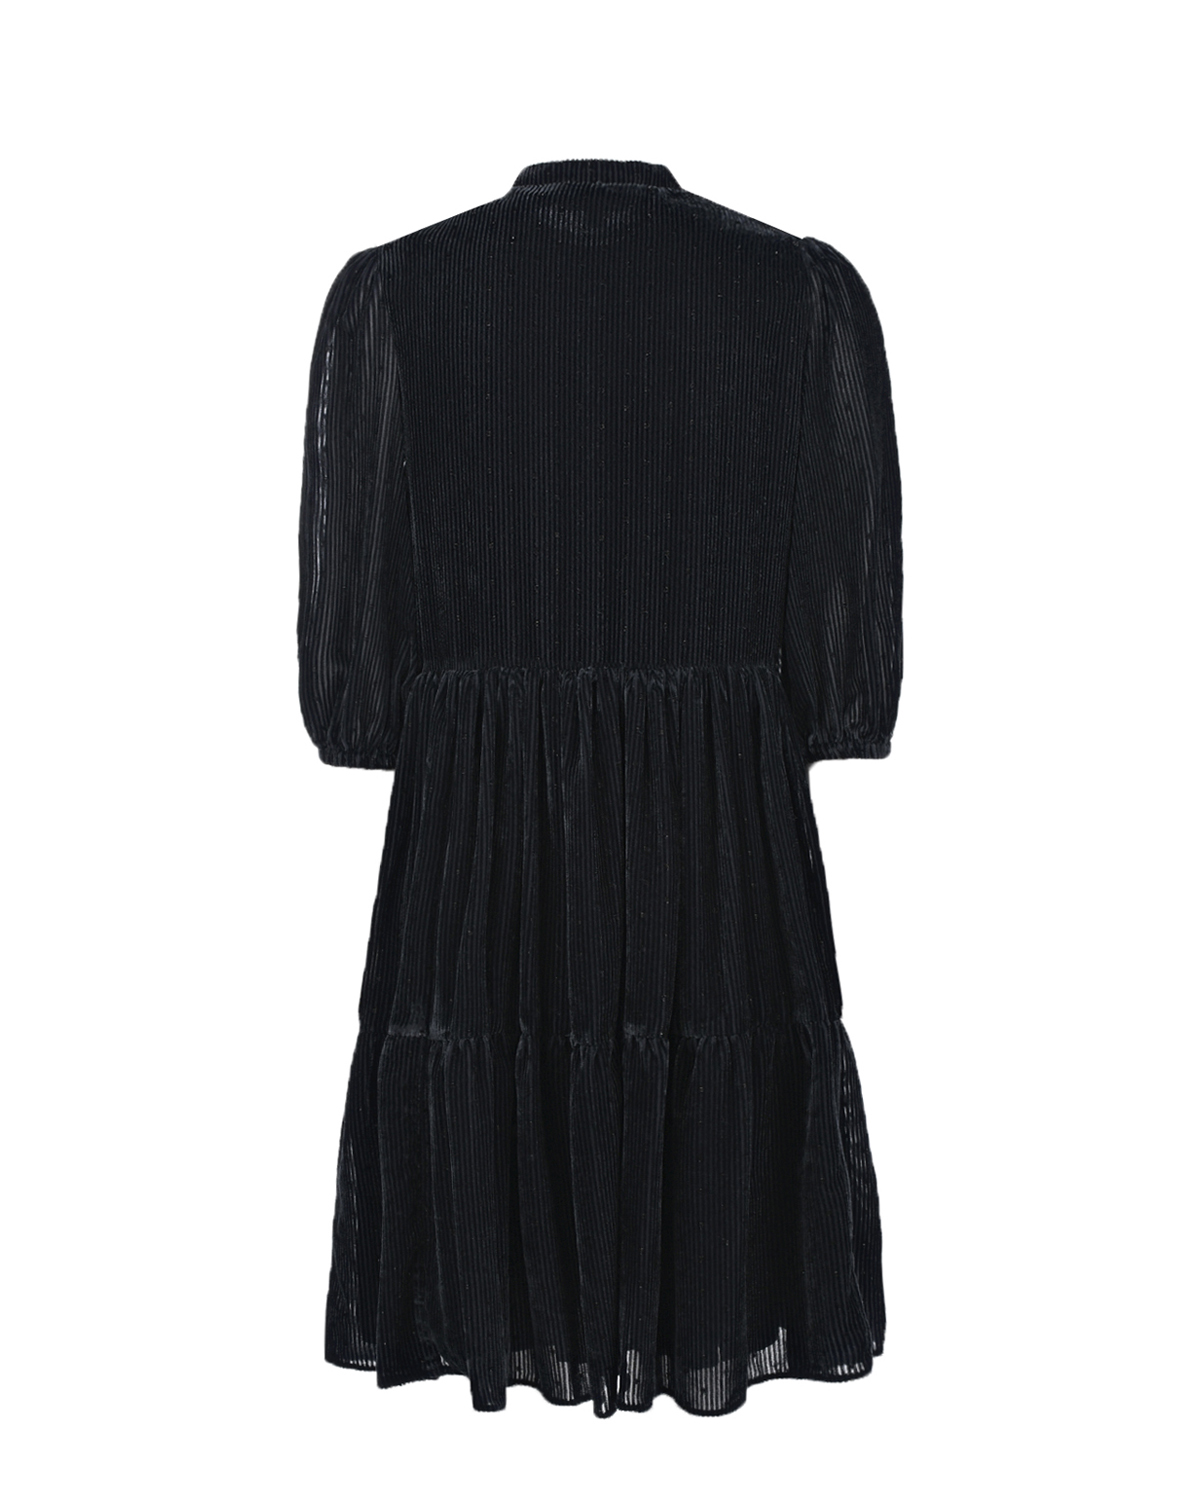 Черное платье с рукавами 3/4 Emporio Armani детское, размер 140, цвет черный Черное платье с рукавами 3/4 Emporio Armani детское - фото 2